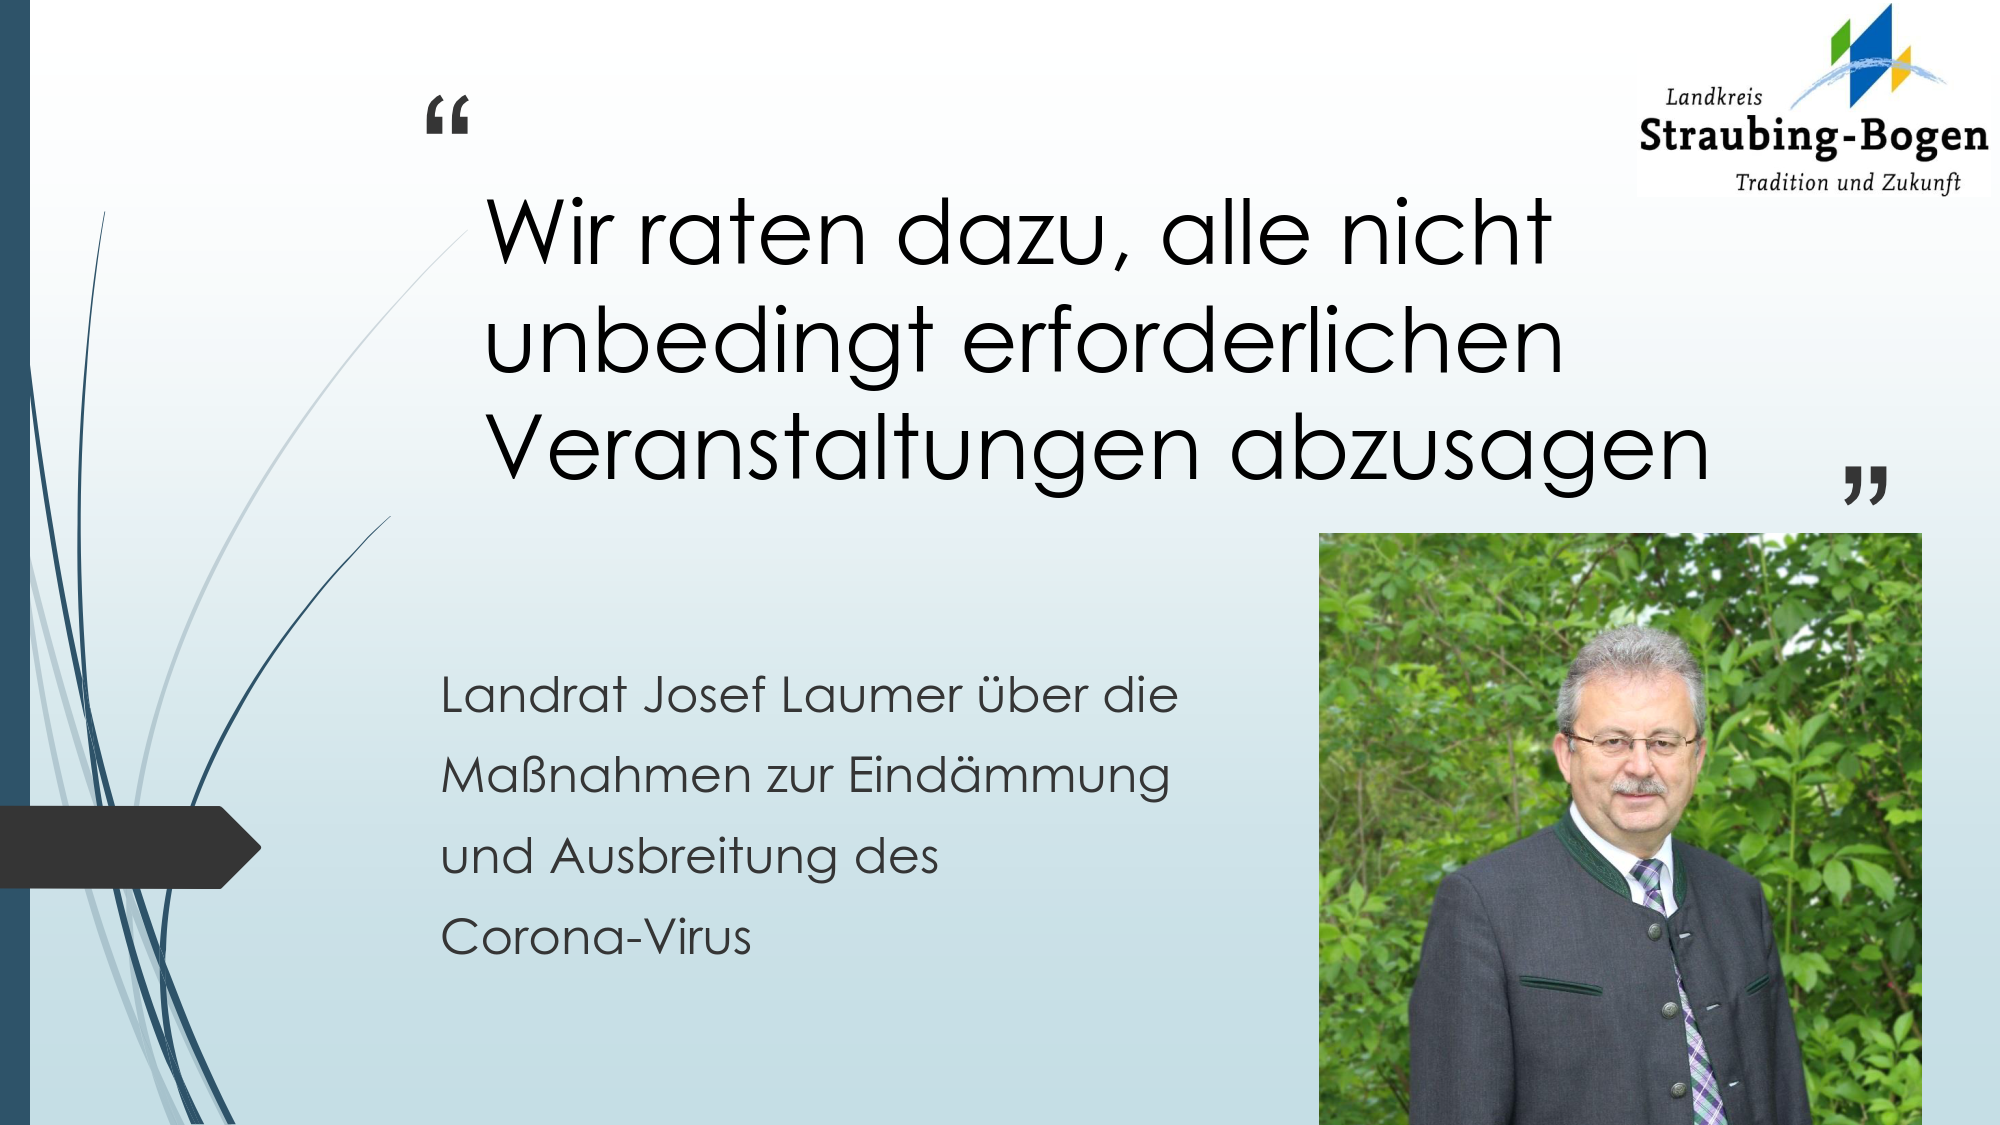 Landrat Josef Laumer rät zur Absage aller Veranstaltungen im Landkreis bis 19. April